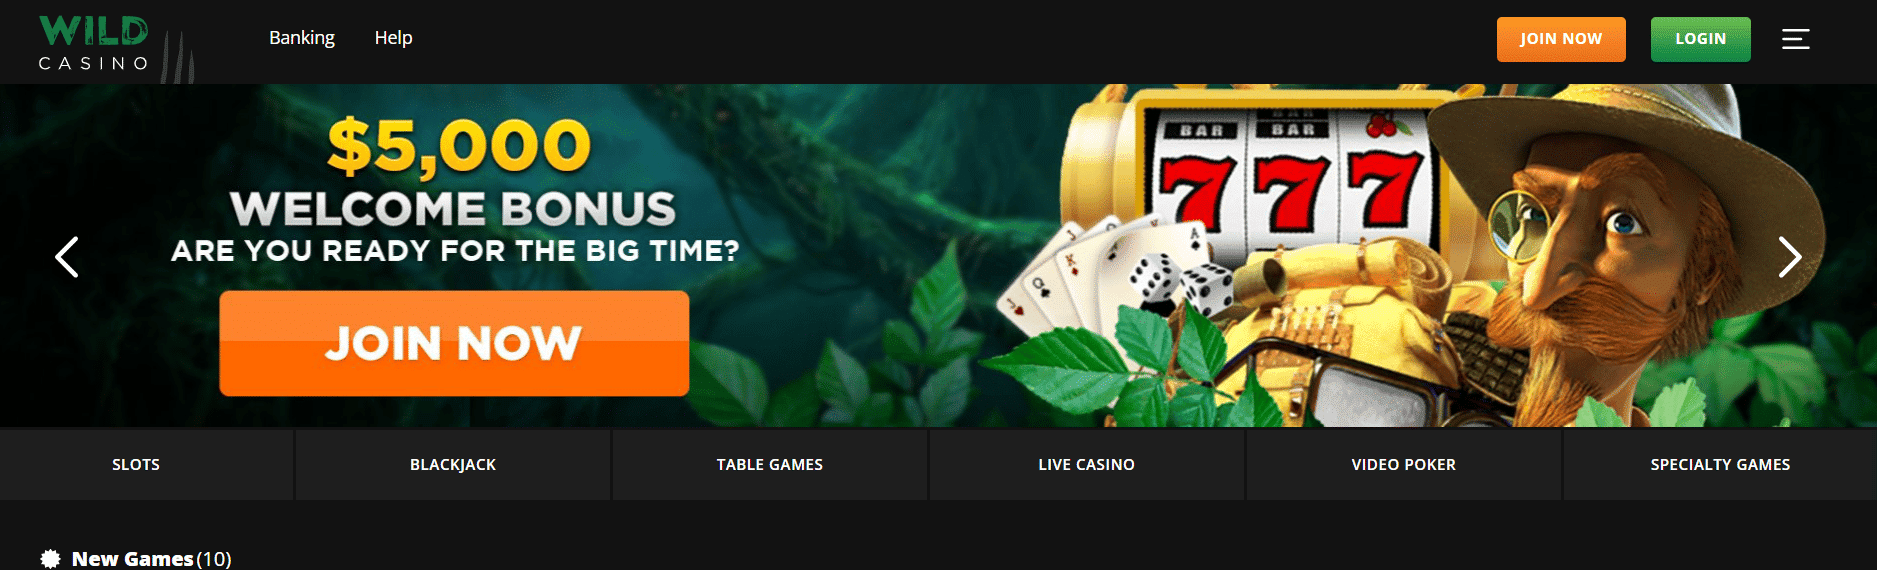 wildcasino beste online casino met gratis startgeld Nederland